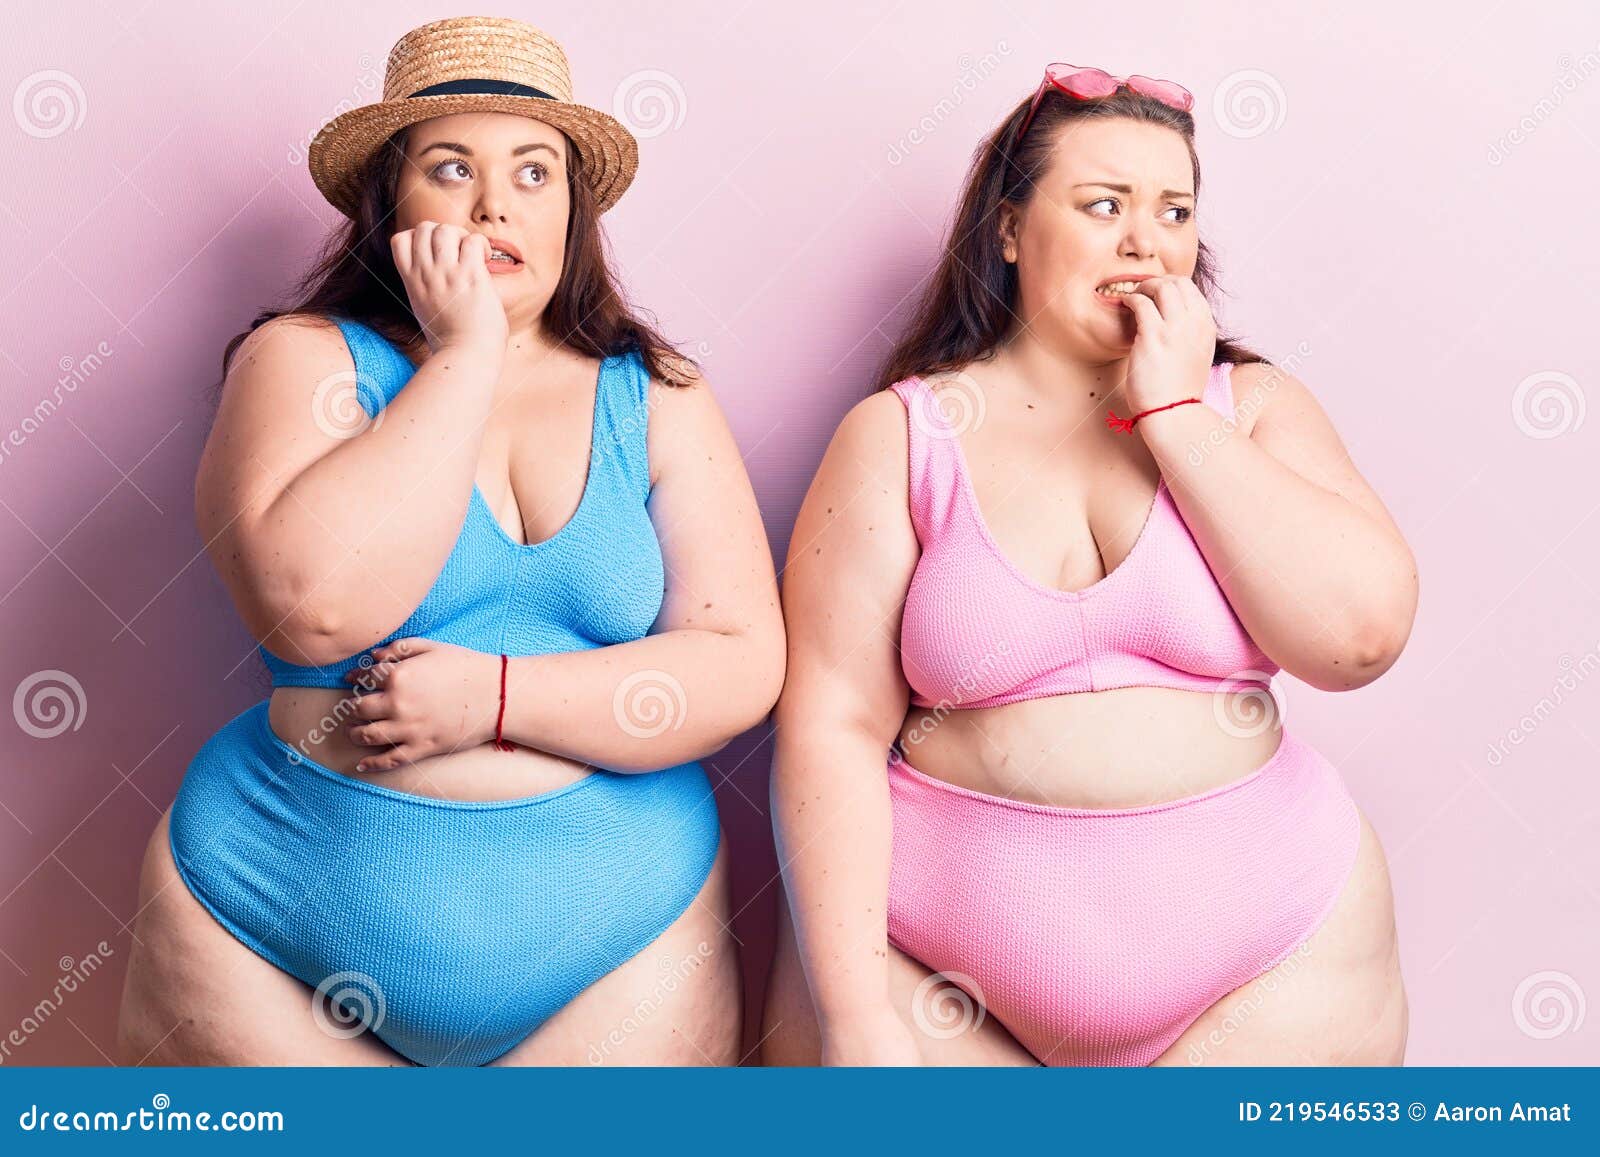 Bikini twins beach-nude pics